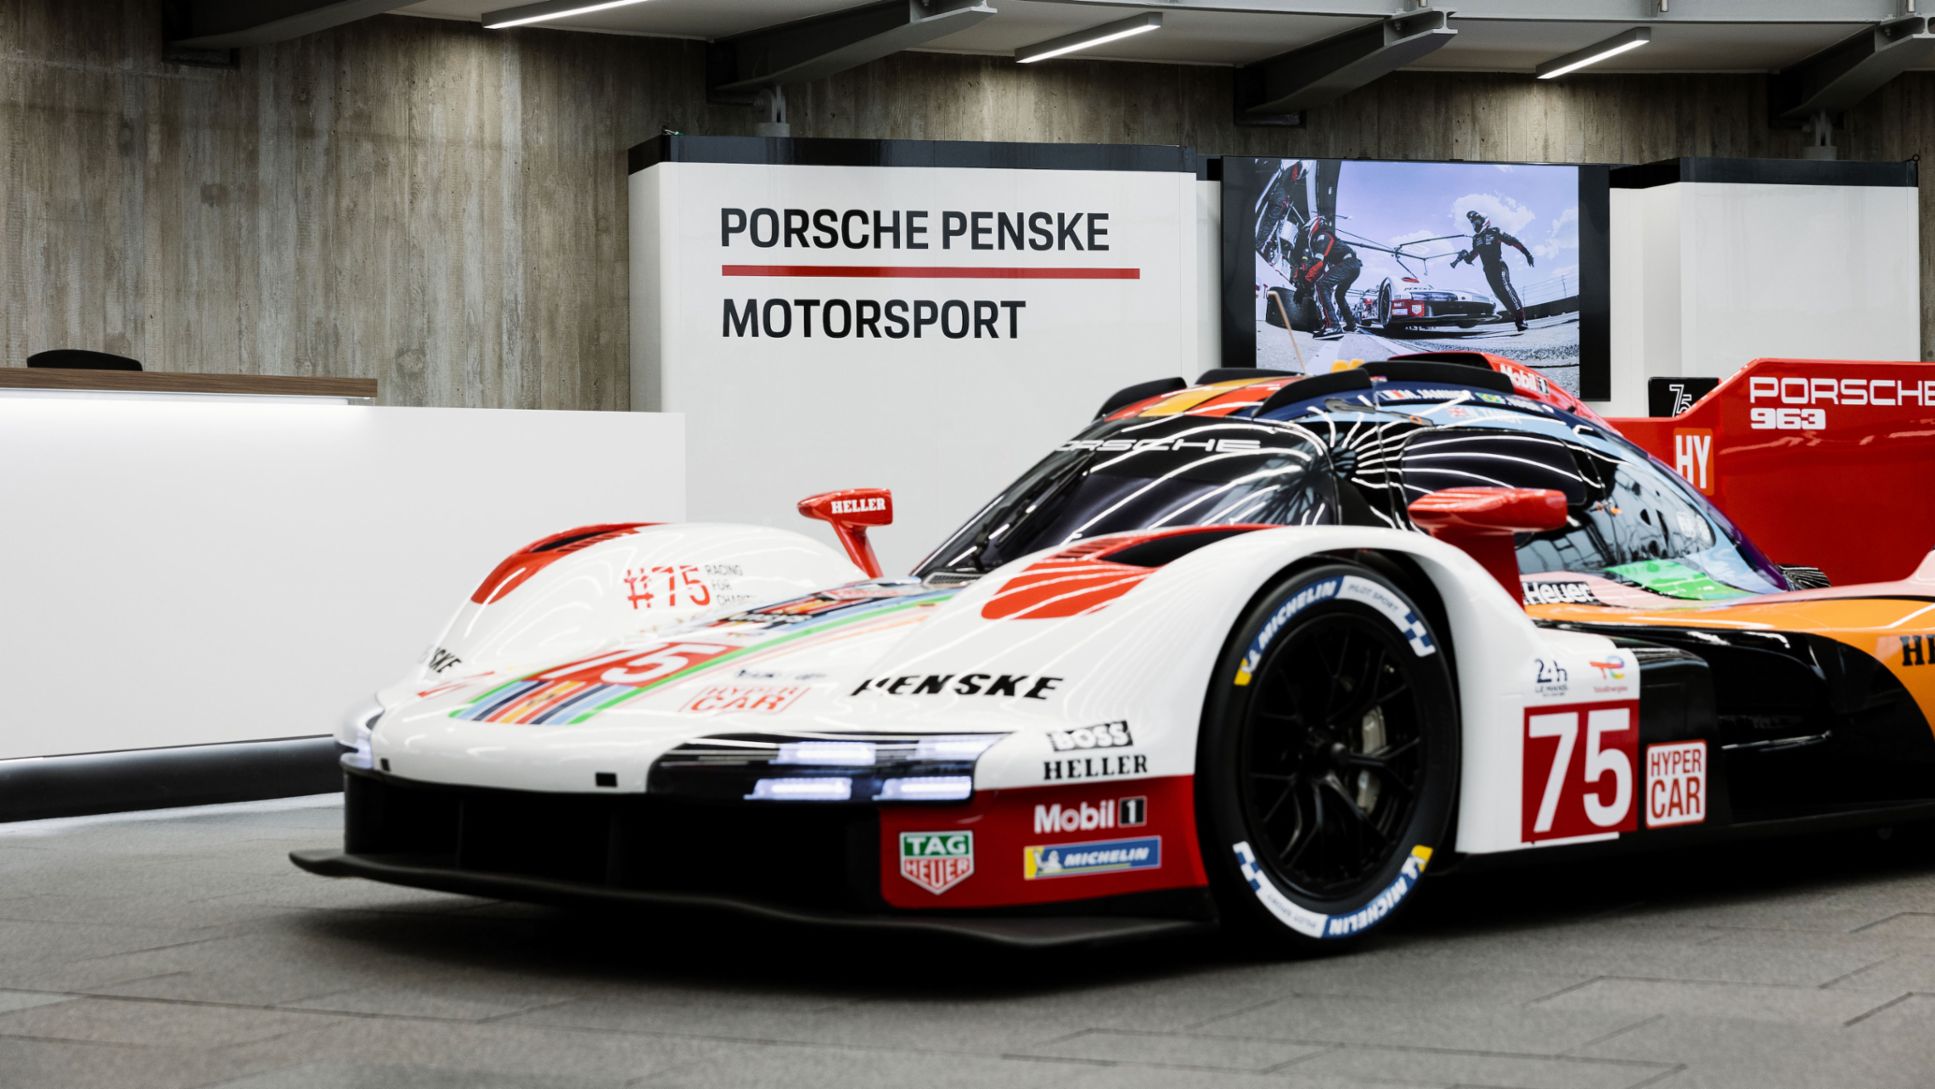 Porsche 963, Porsche Penske Motorsport, entrada de la sede de Mannheim, 2024, Porsche AG